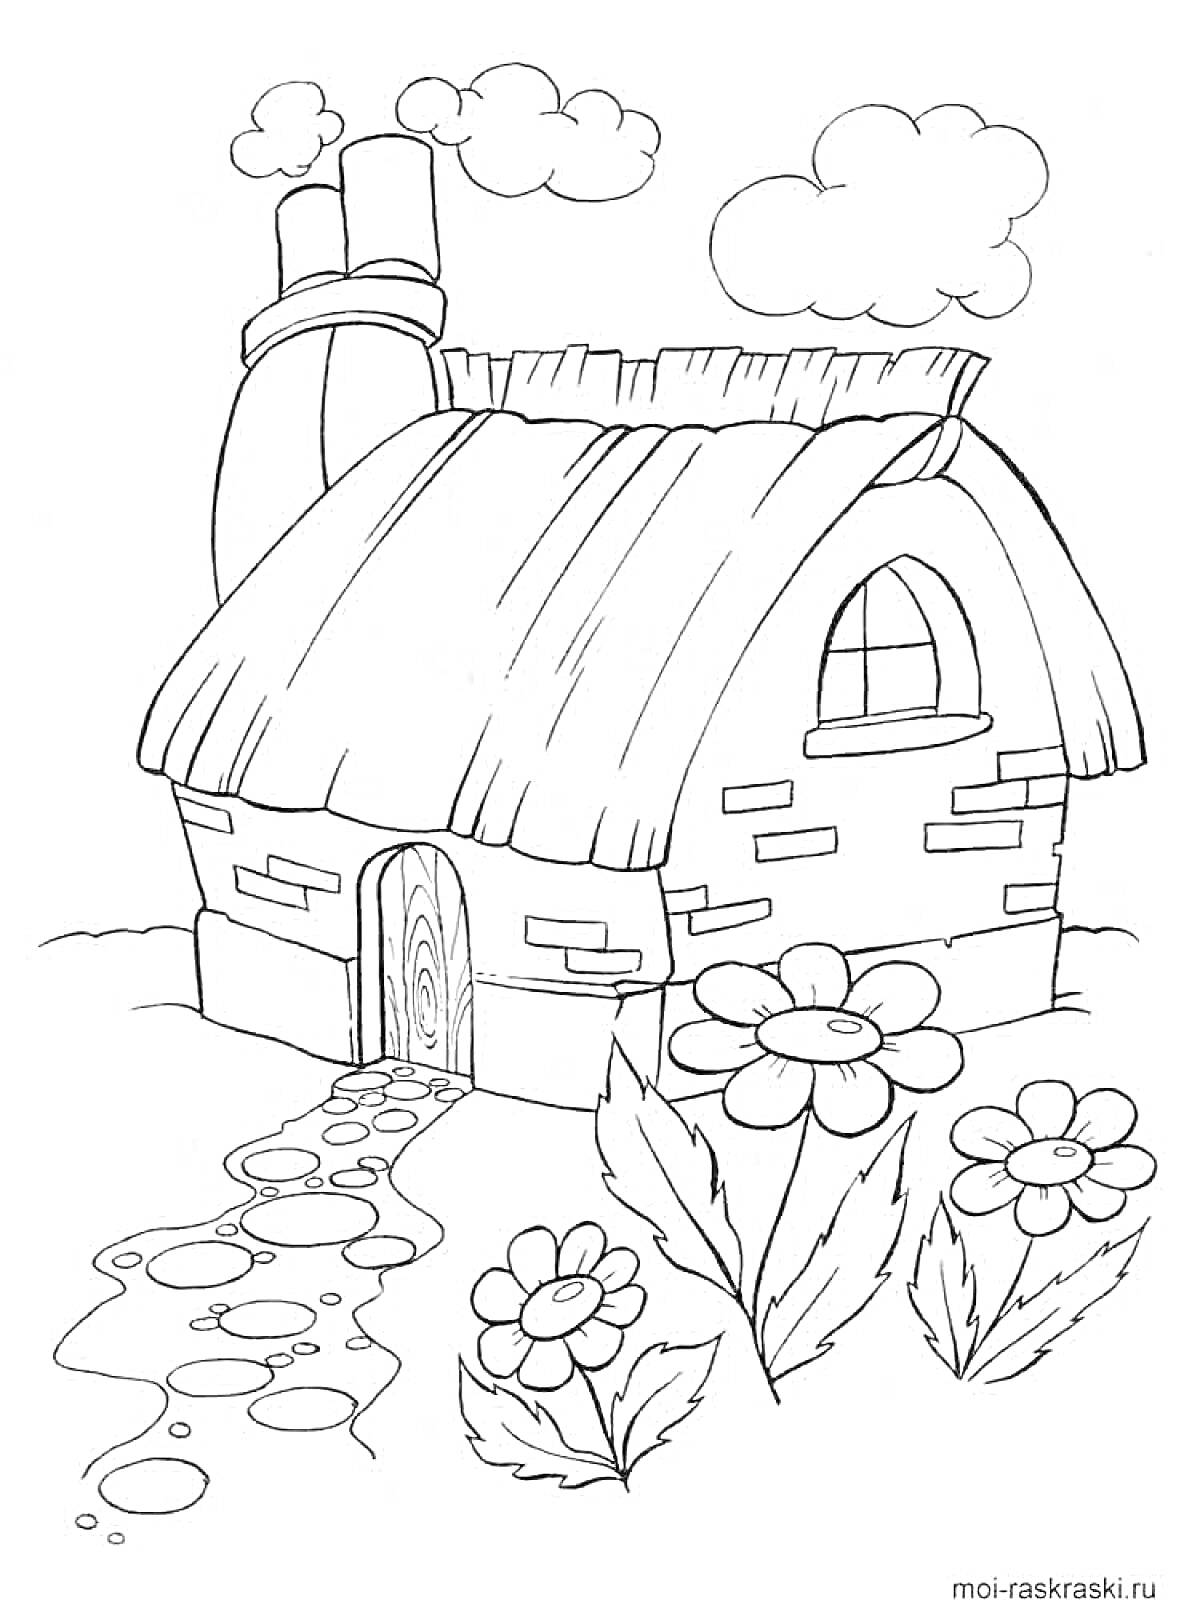 Домик с соломенной крышей, облака, цветы и каменная дорожка